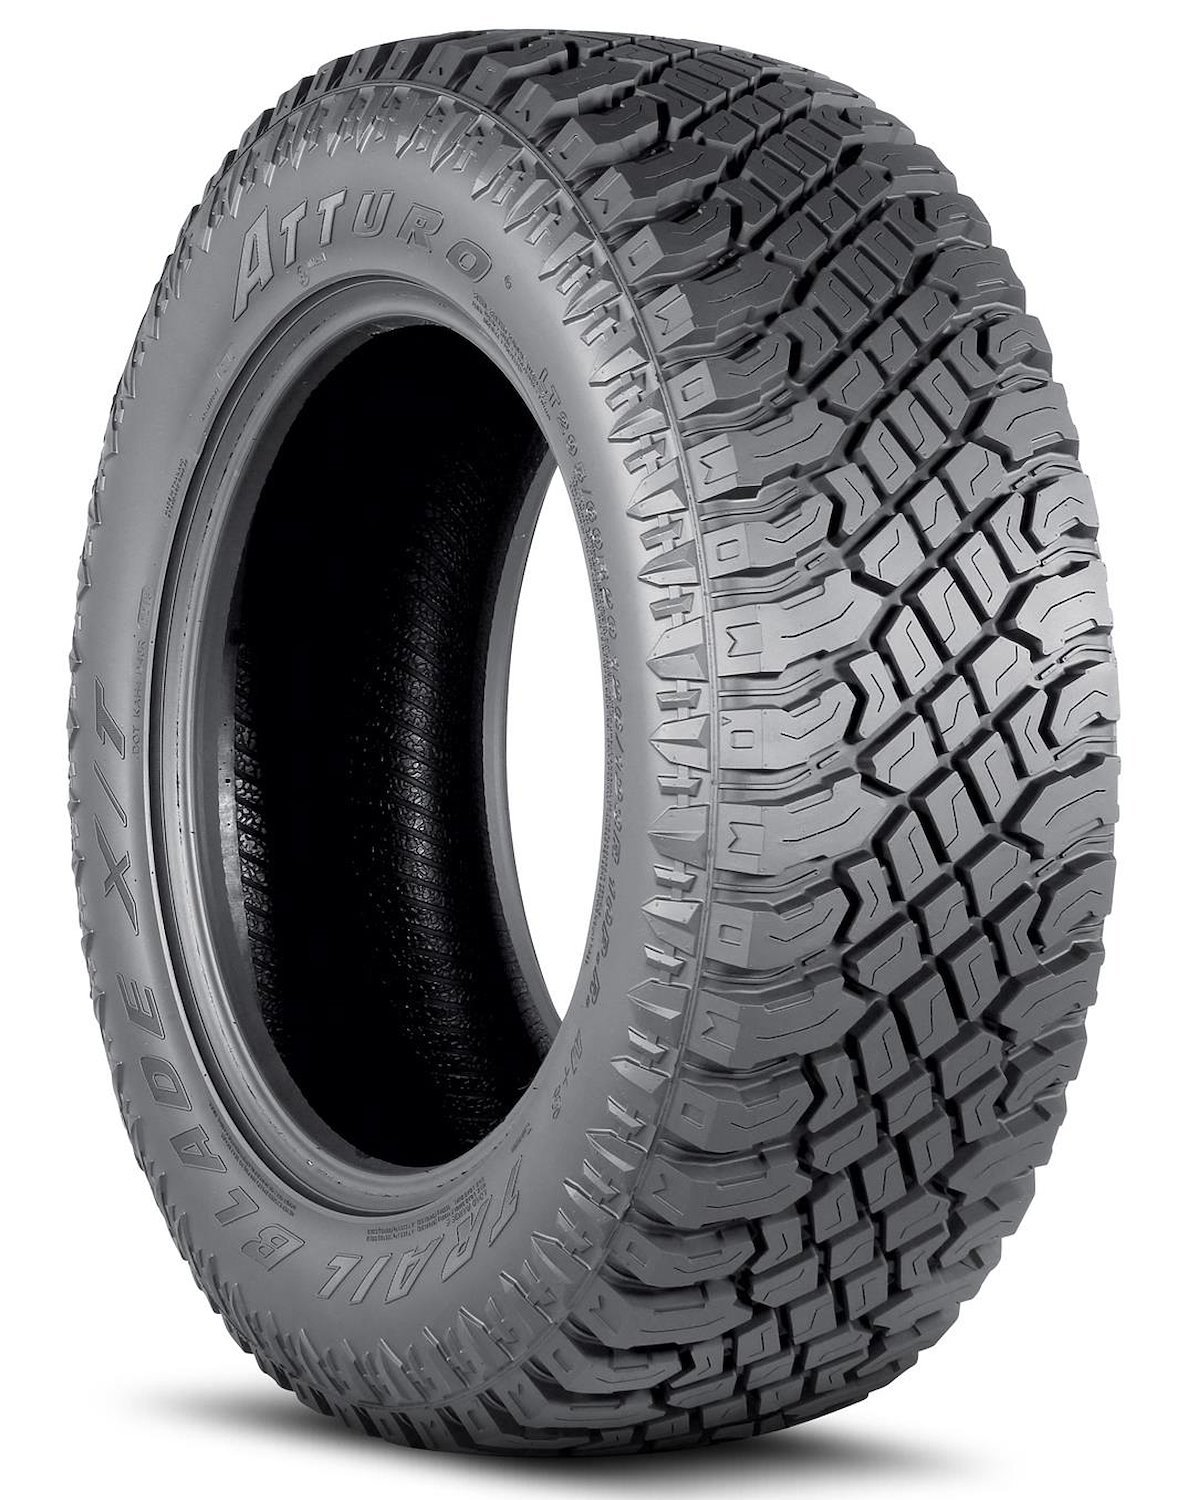 TBXT-LH5R3LA Trail Blade X/T Tire, 33x12.50R18LT